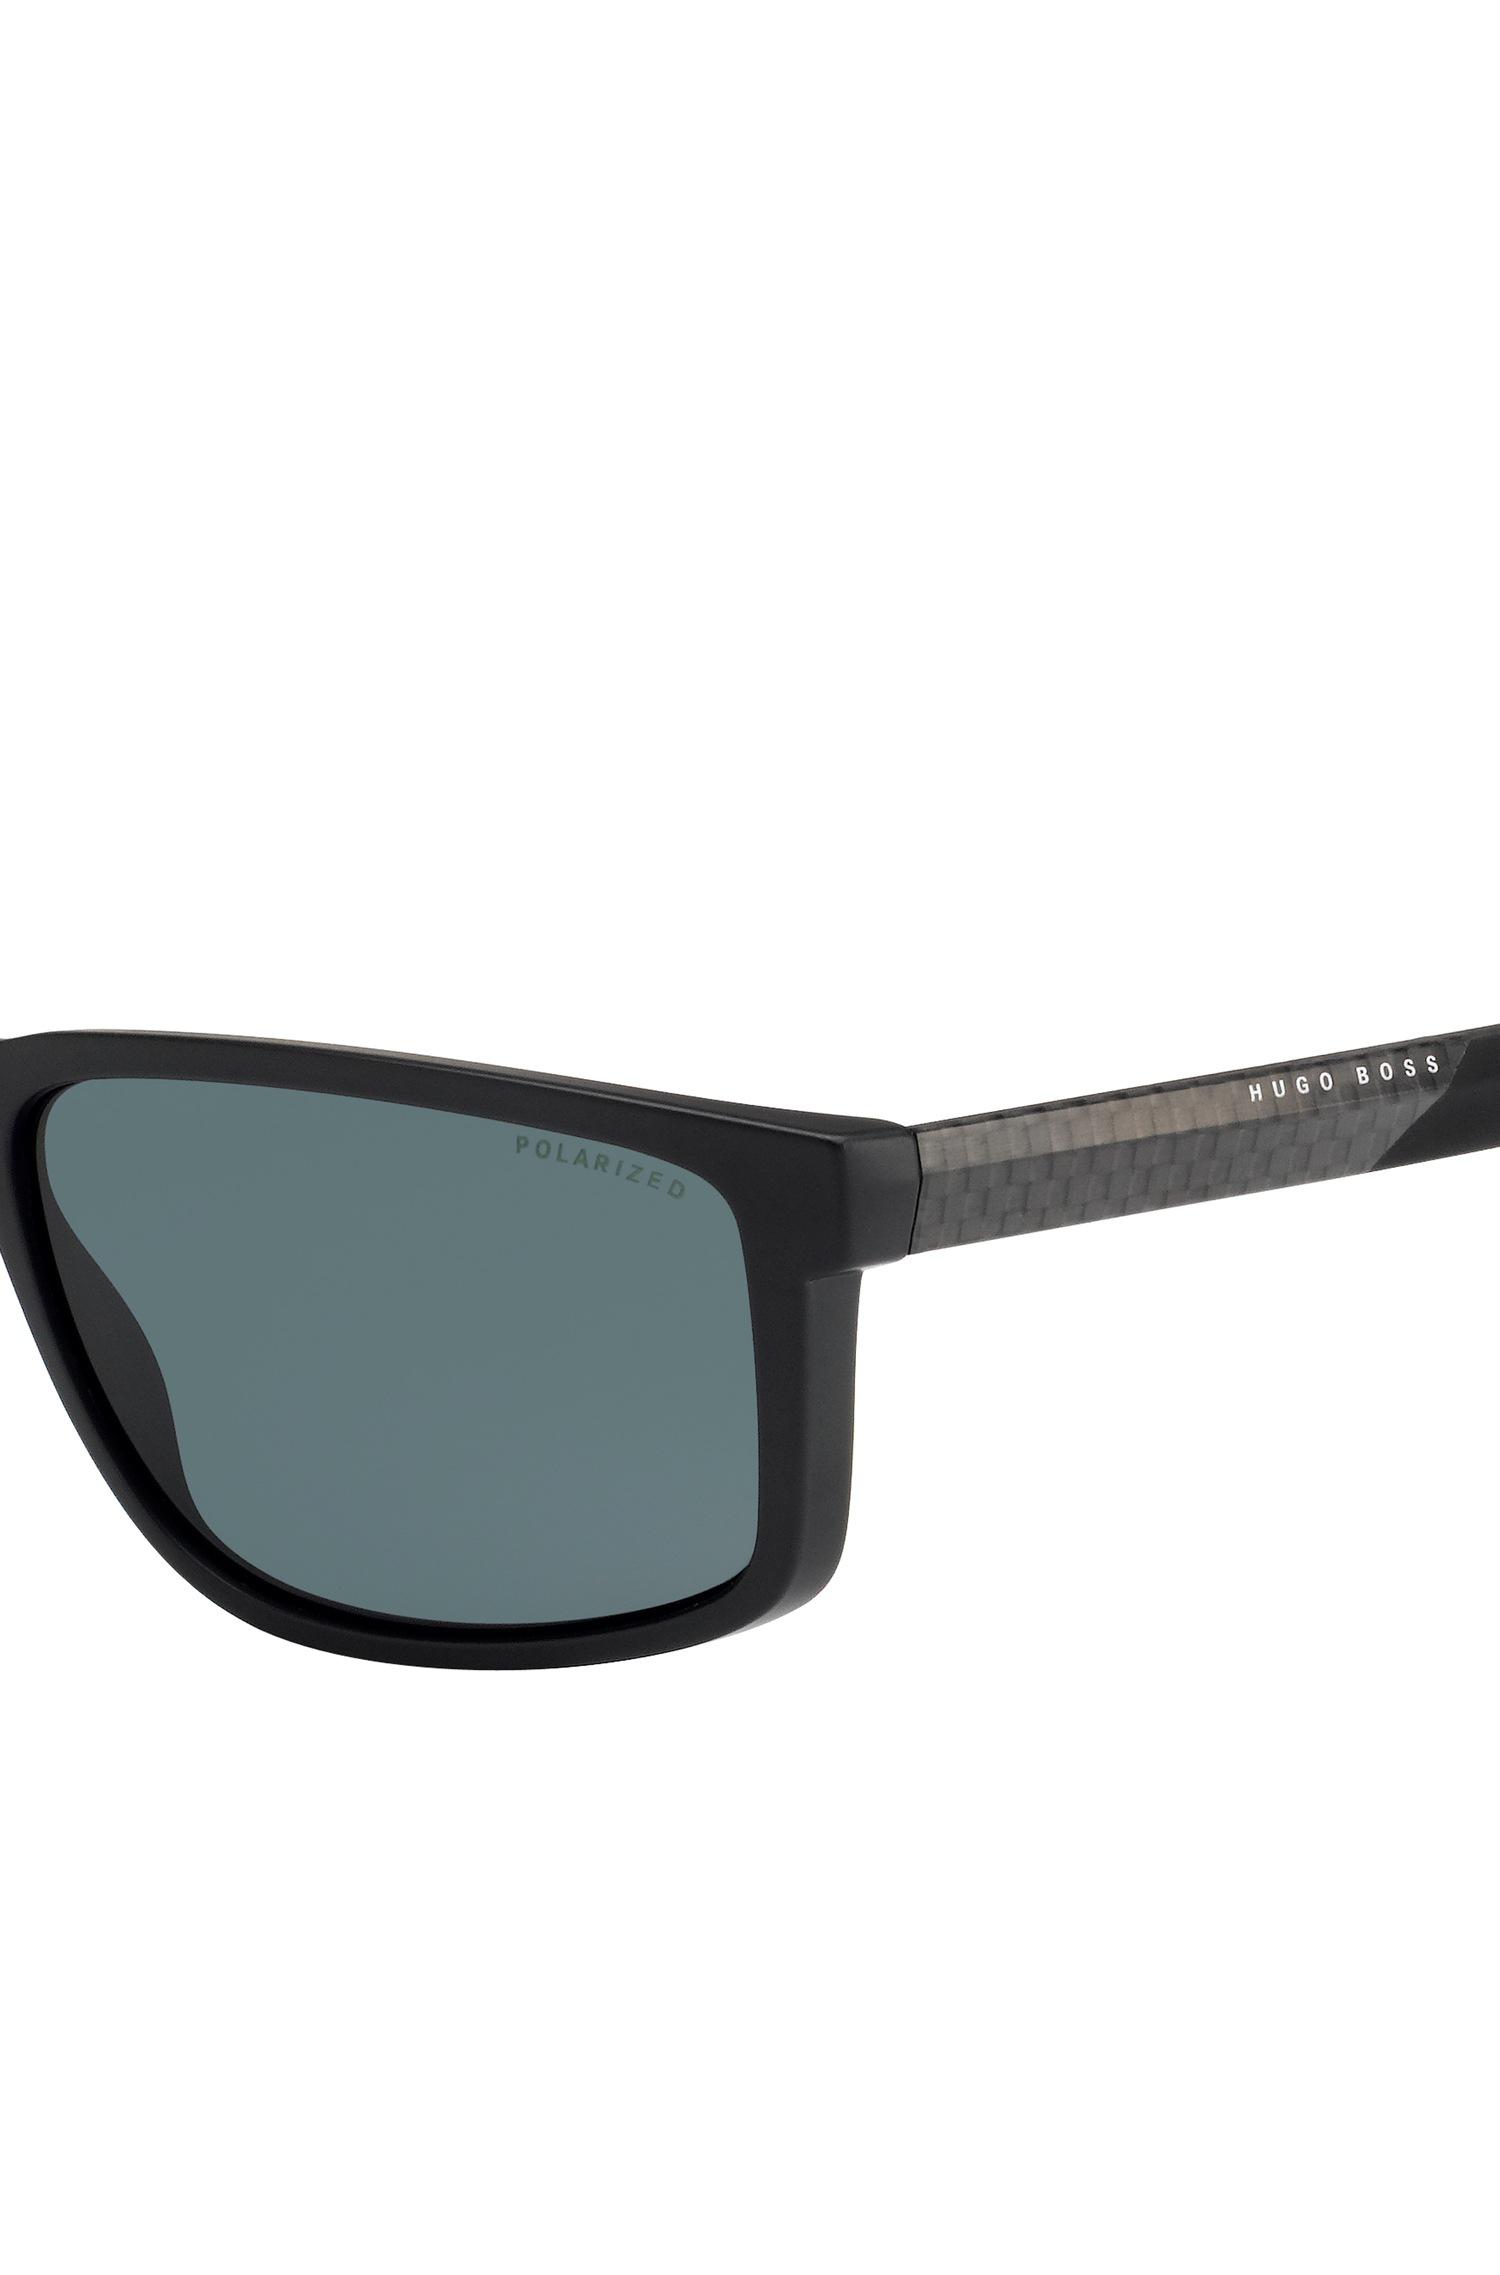 BOSS by HUGO BOSS ' 0833s' | Rectangular Carbon Fiber Polarized Sunglasses  for Men - Lyst